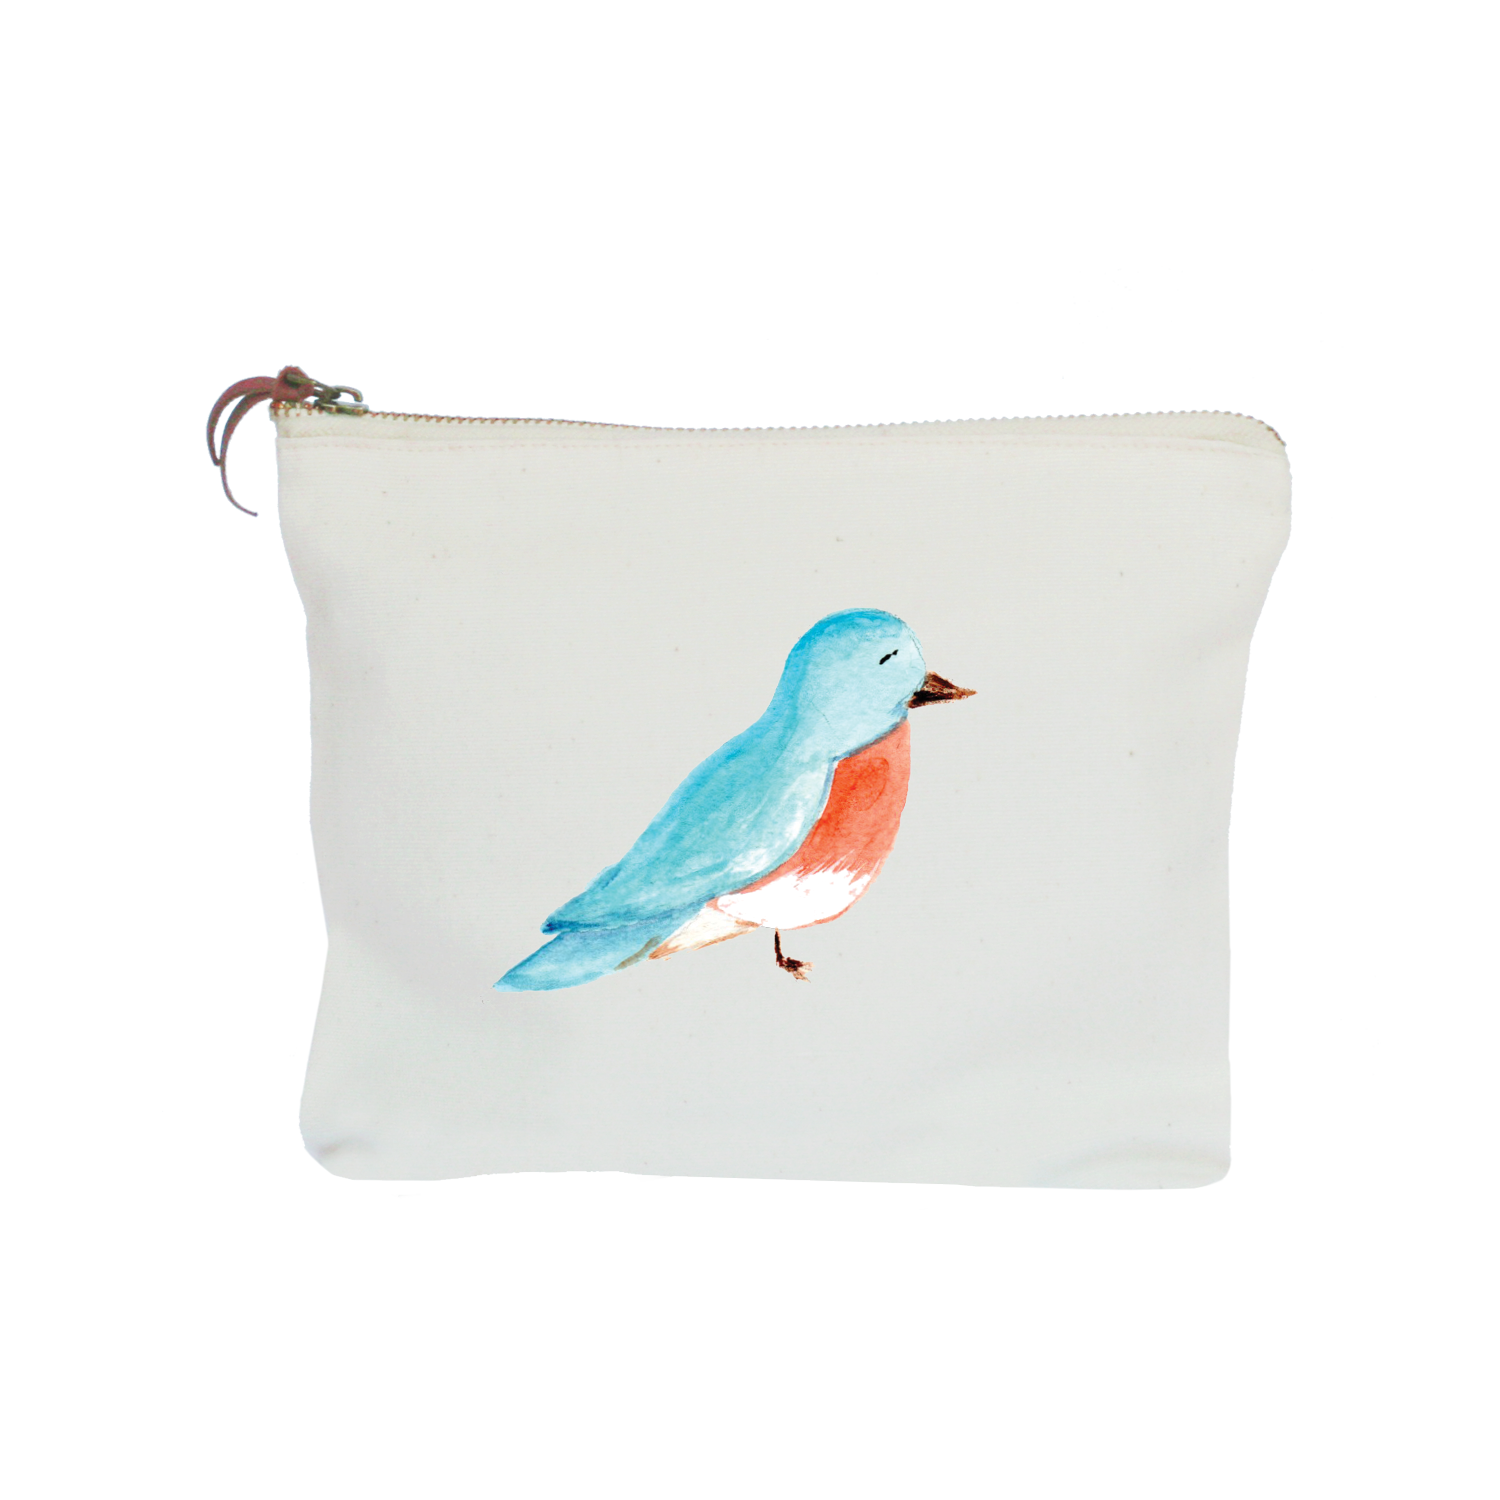 bluebird zipper pouch